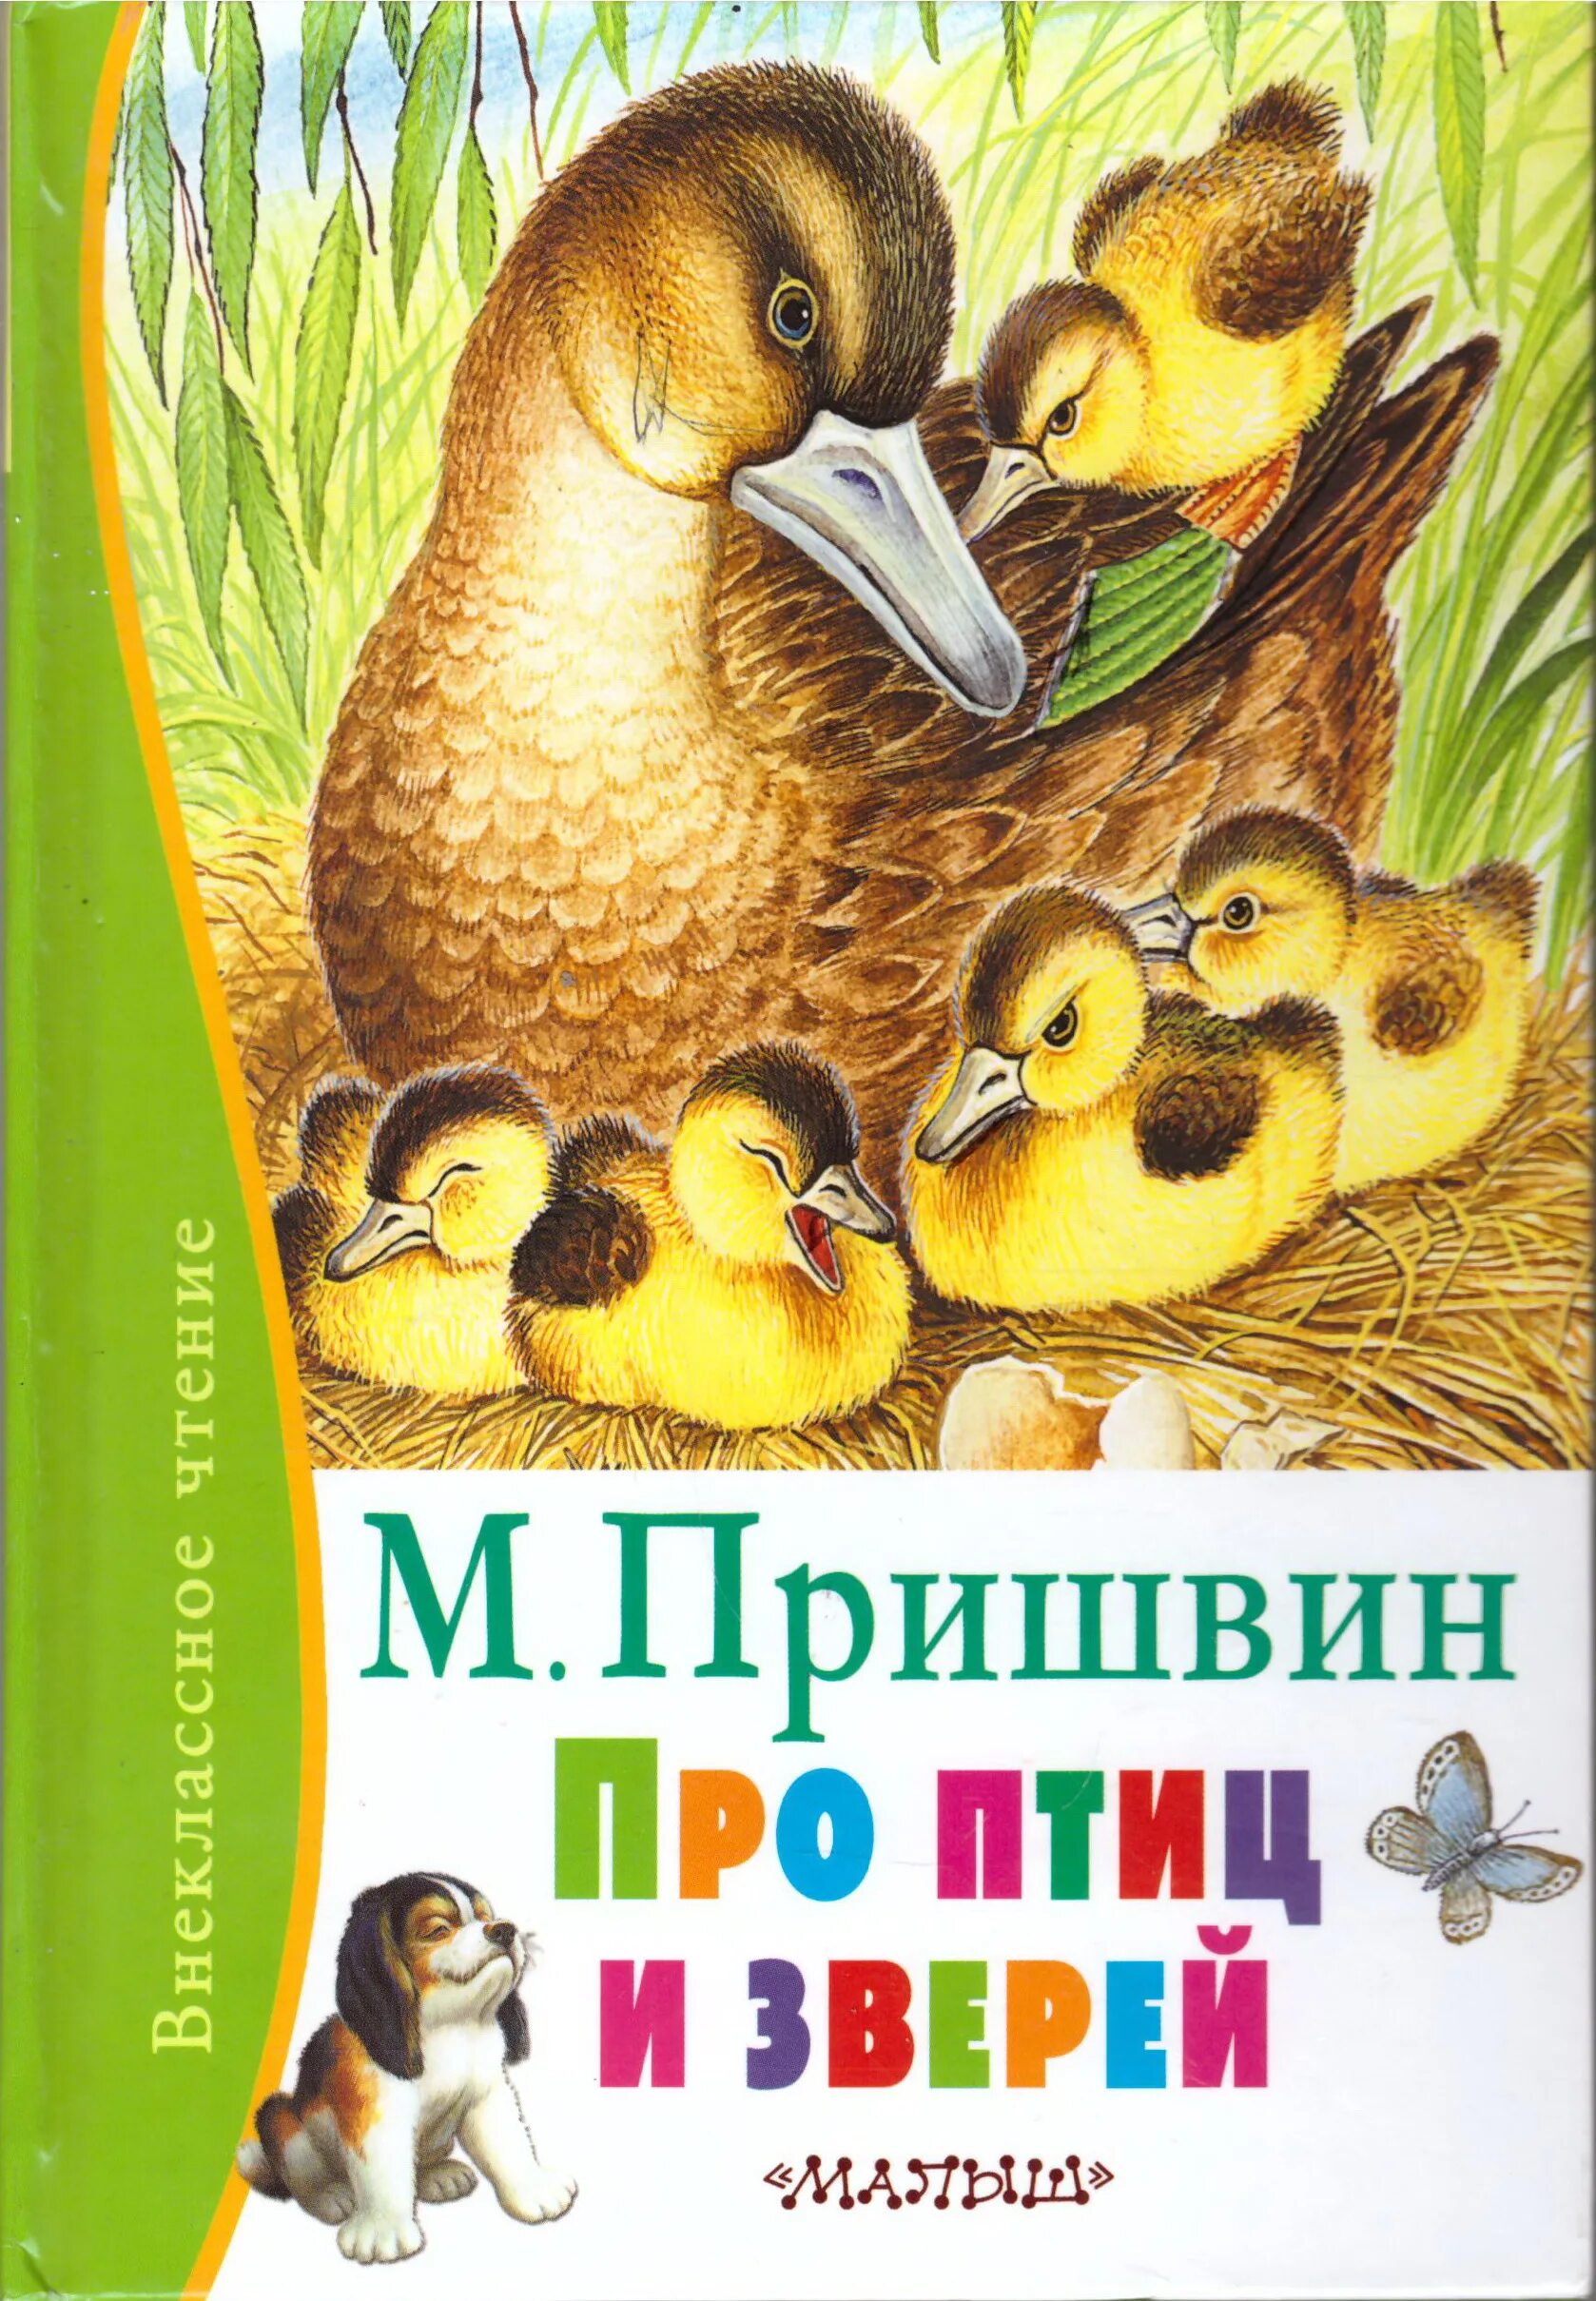 Про людей зверей и птиц. Пришвин про птиц и зверей книга. Обложка книги о животных.